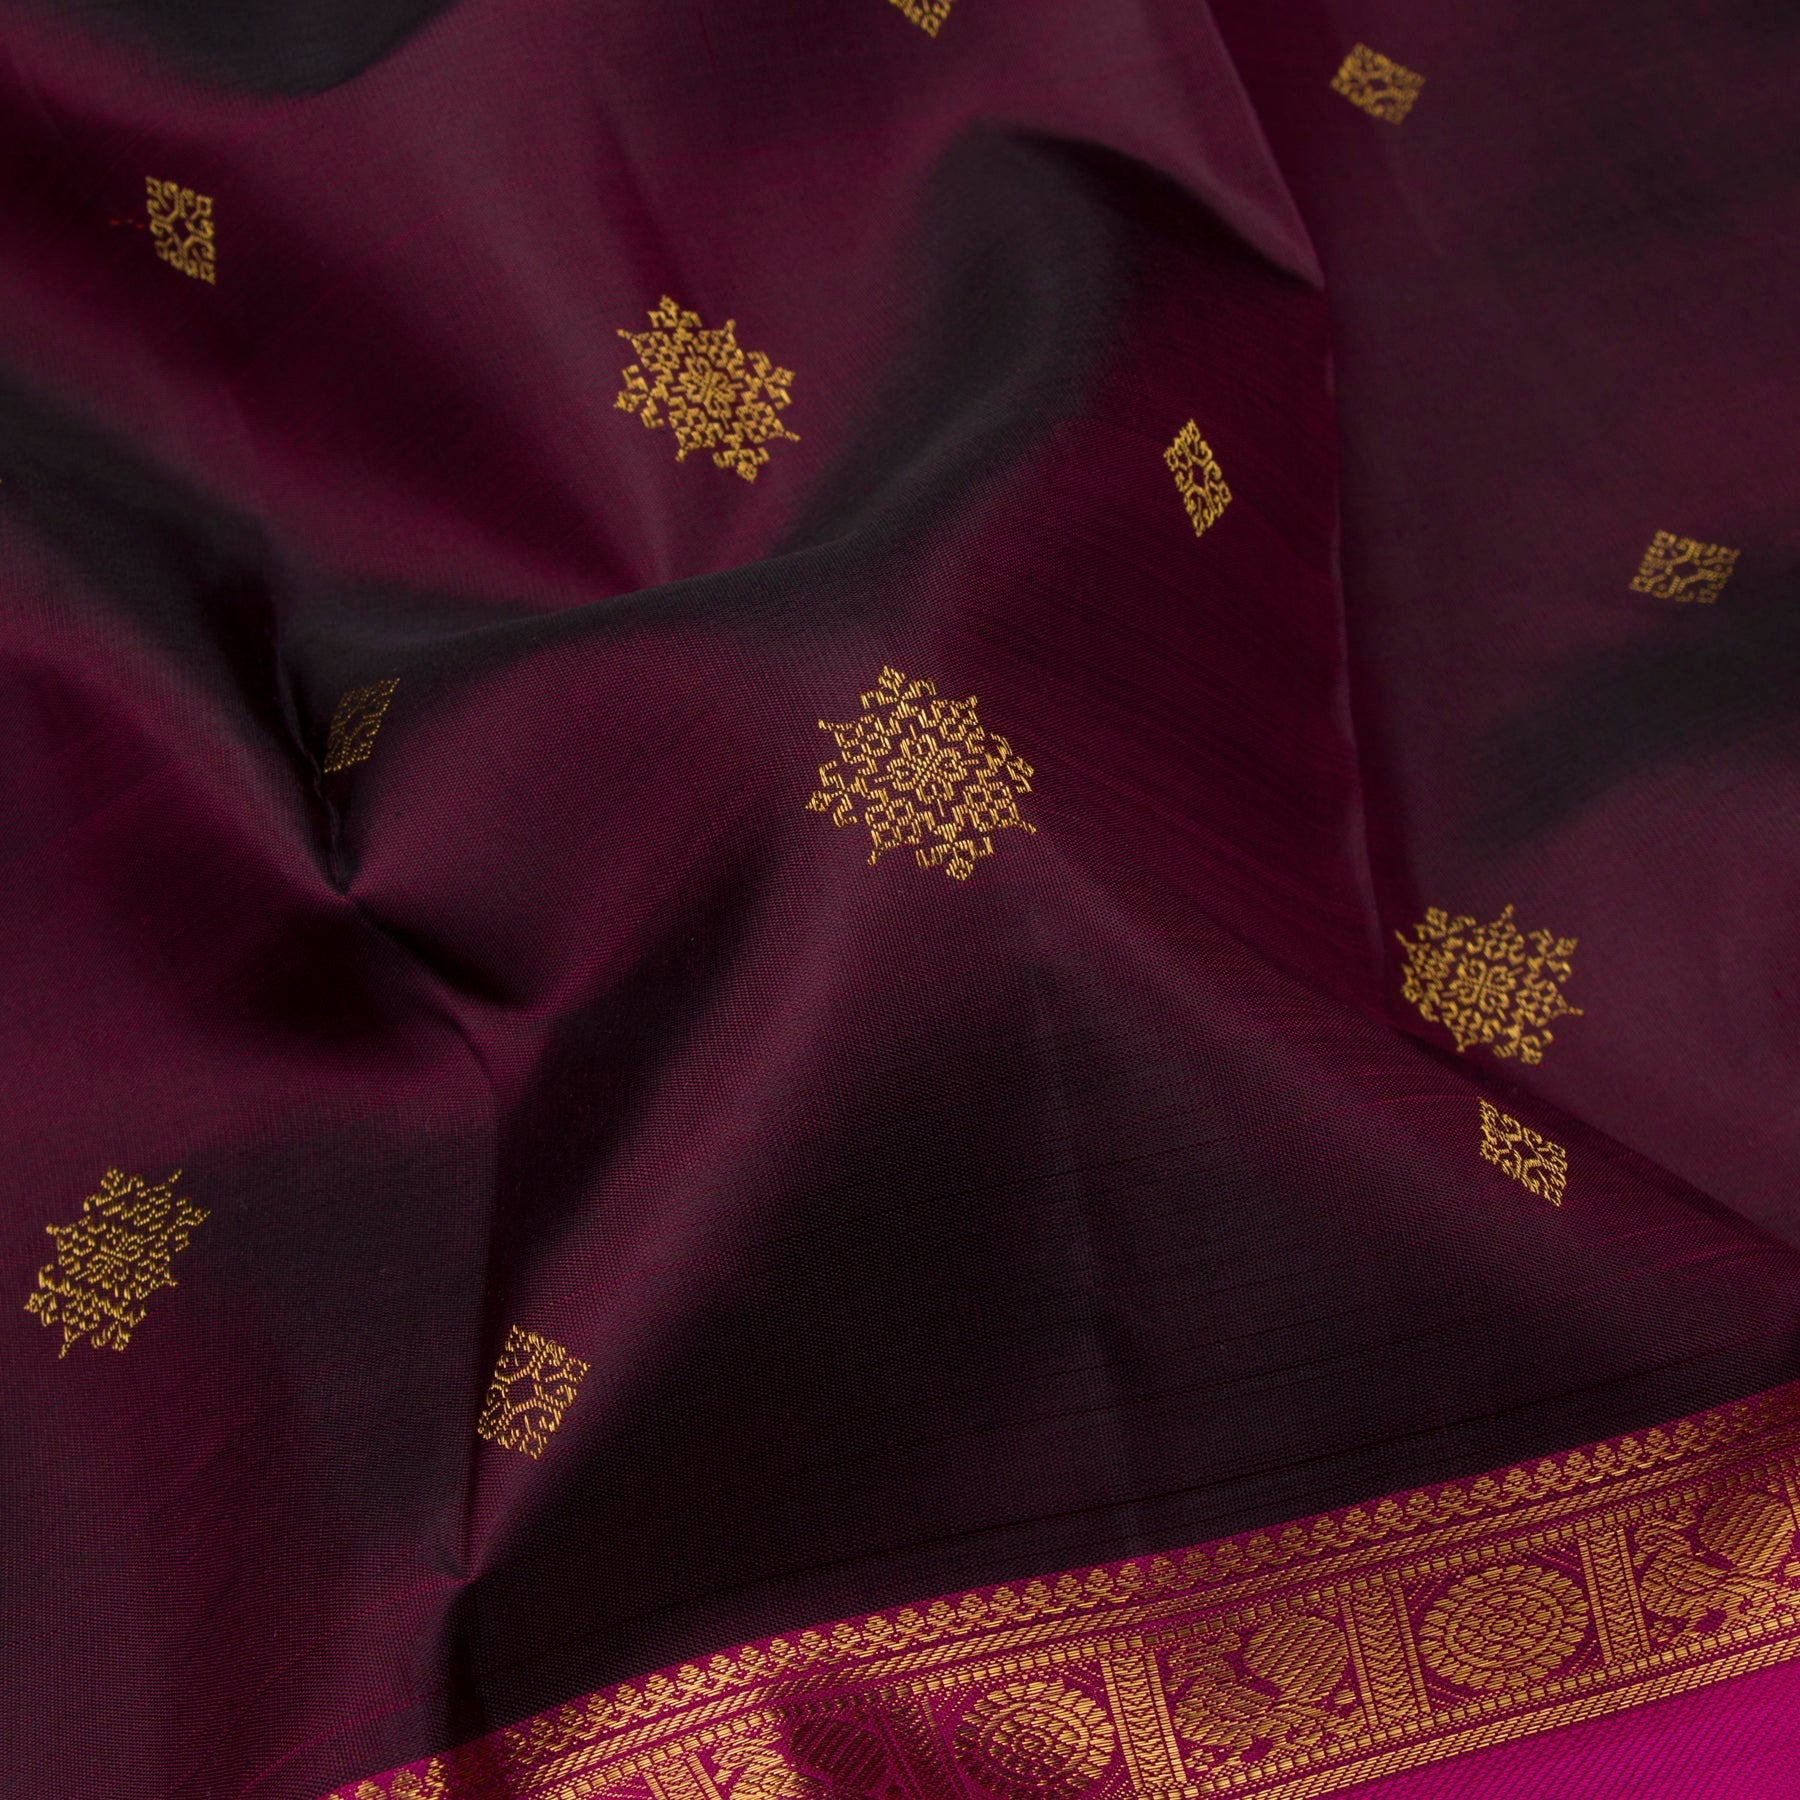 Kanakavalli Kanjivaram Silk Sari 23-595-HS001-10631 - Fabric View